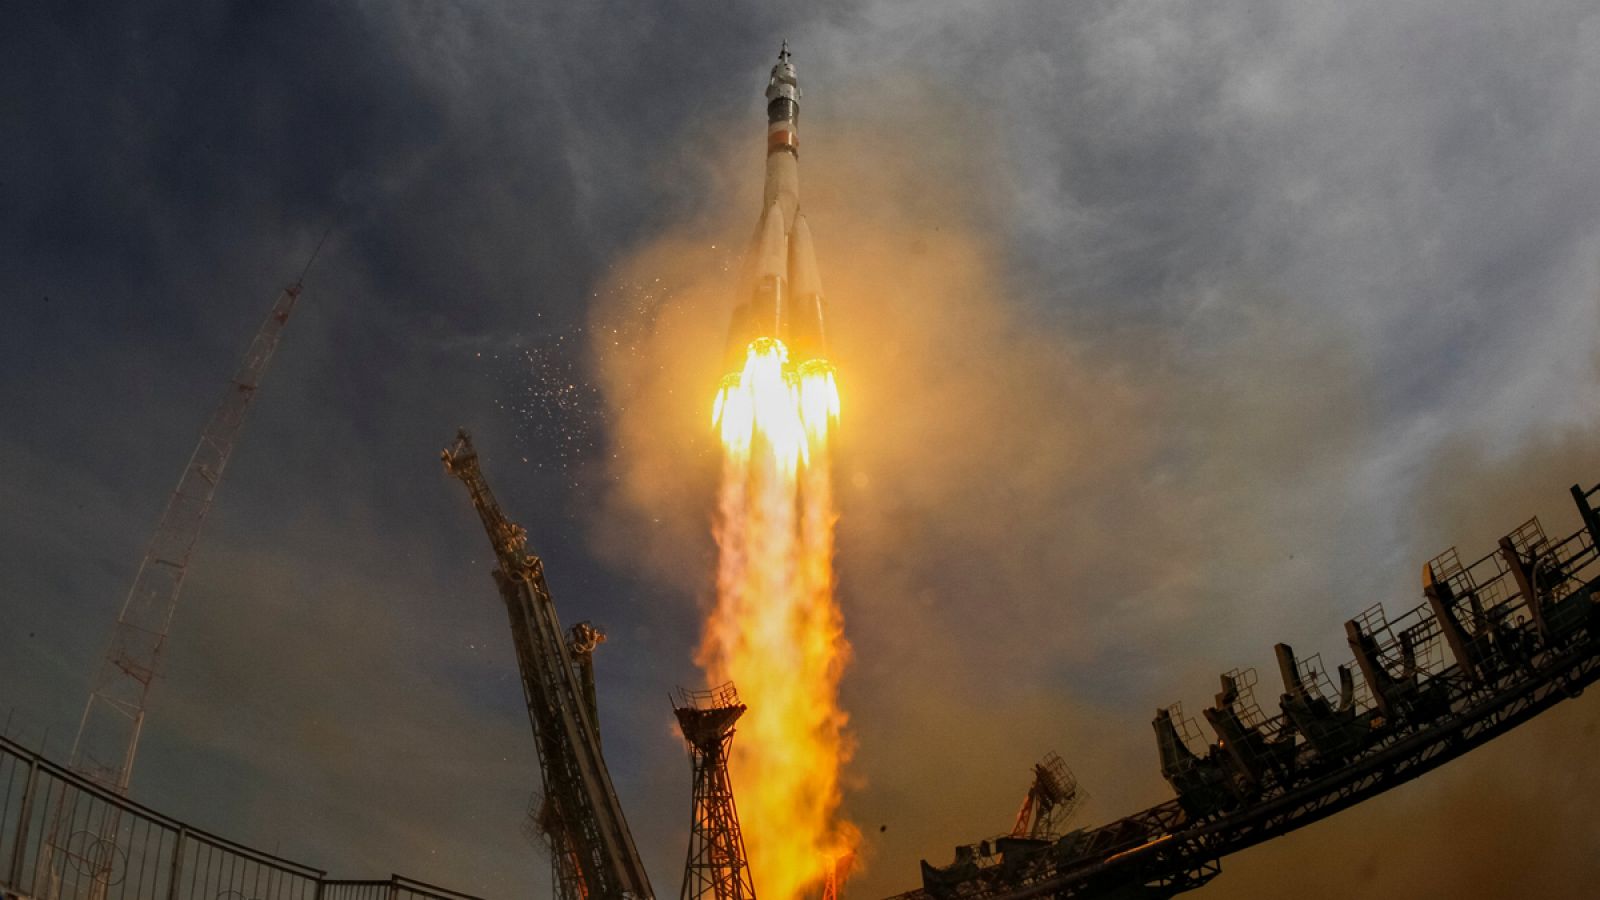 Lanzamiento del cohete Soyuz-FG y la nave espacial Soyuz MS-04 desde el cosmódromo de Baikonur (Kazajistán).